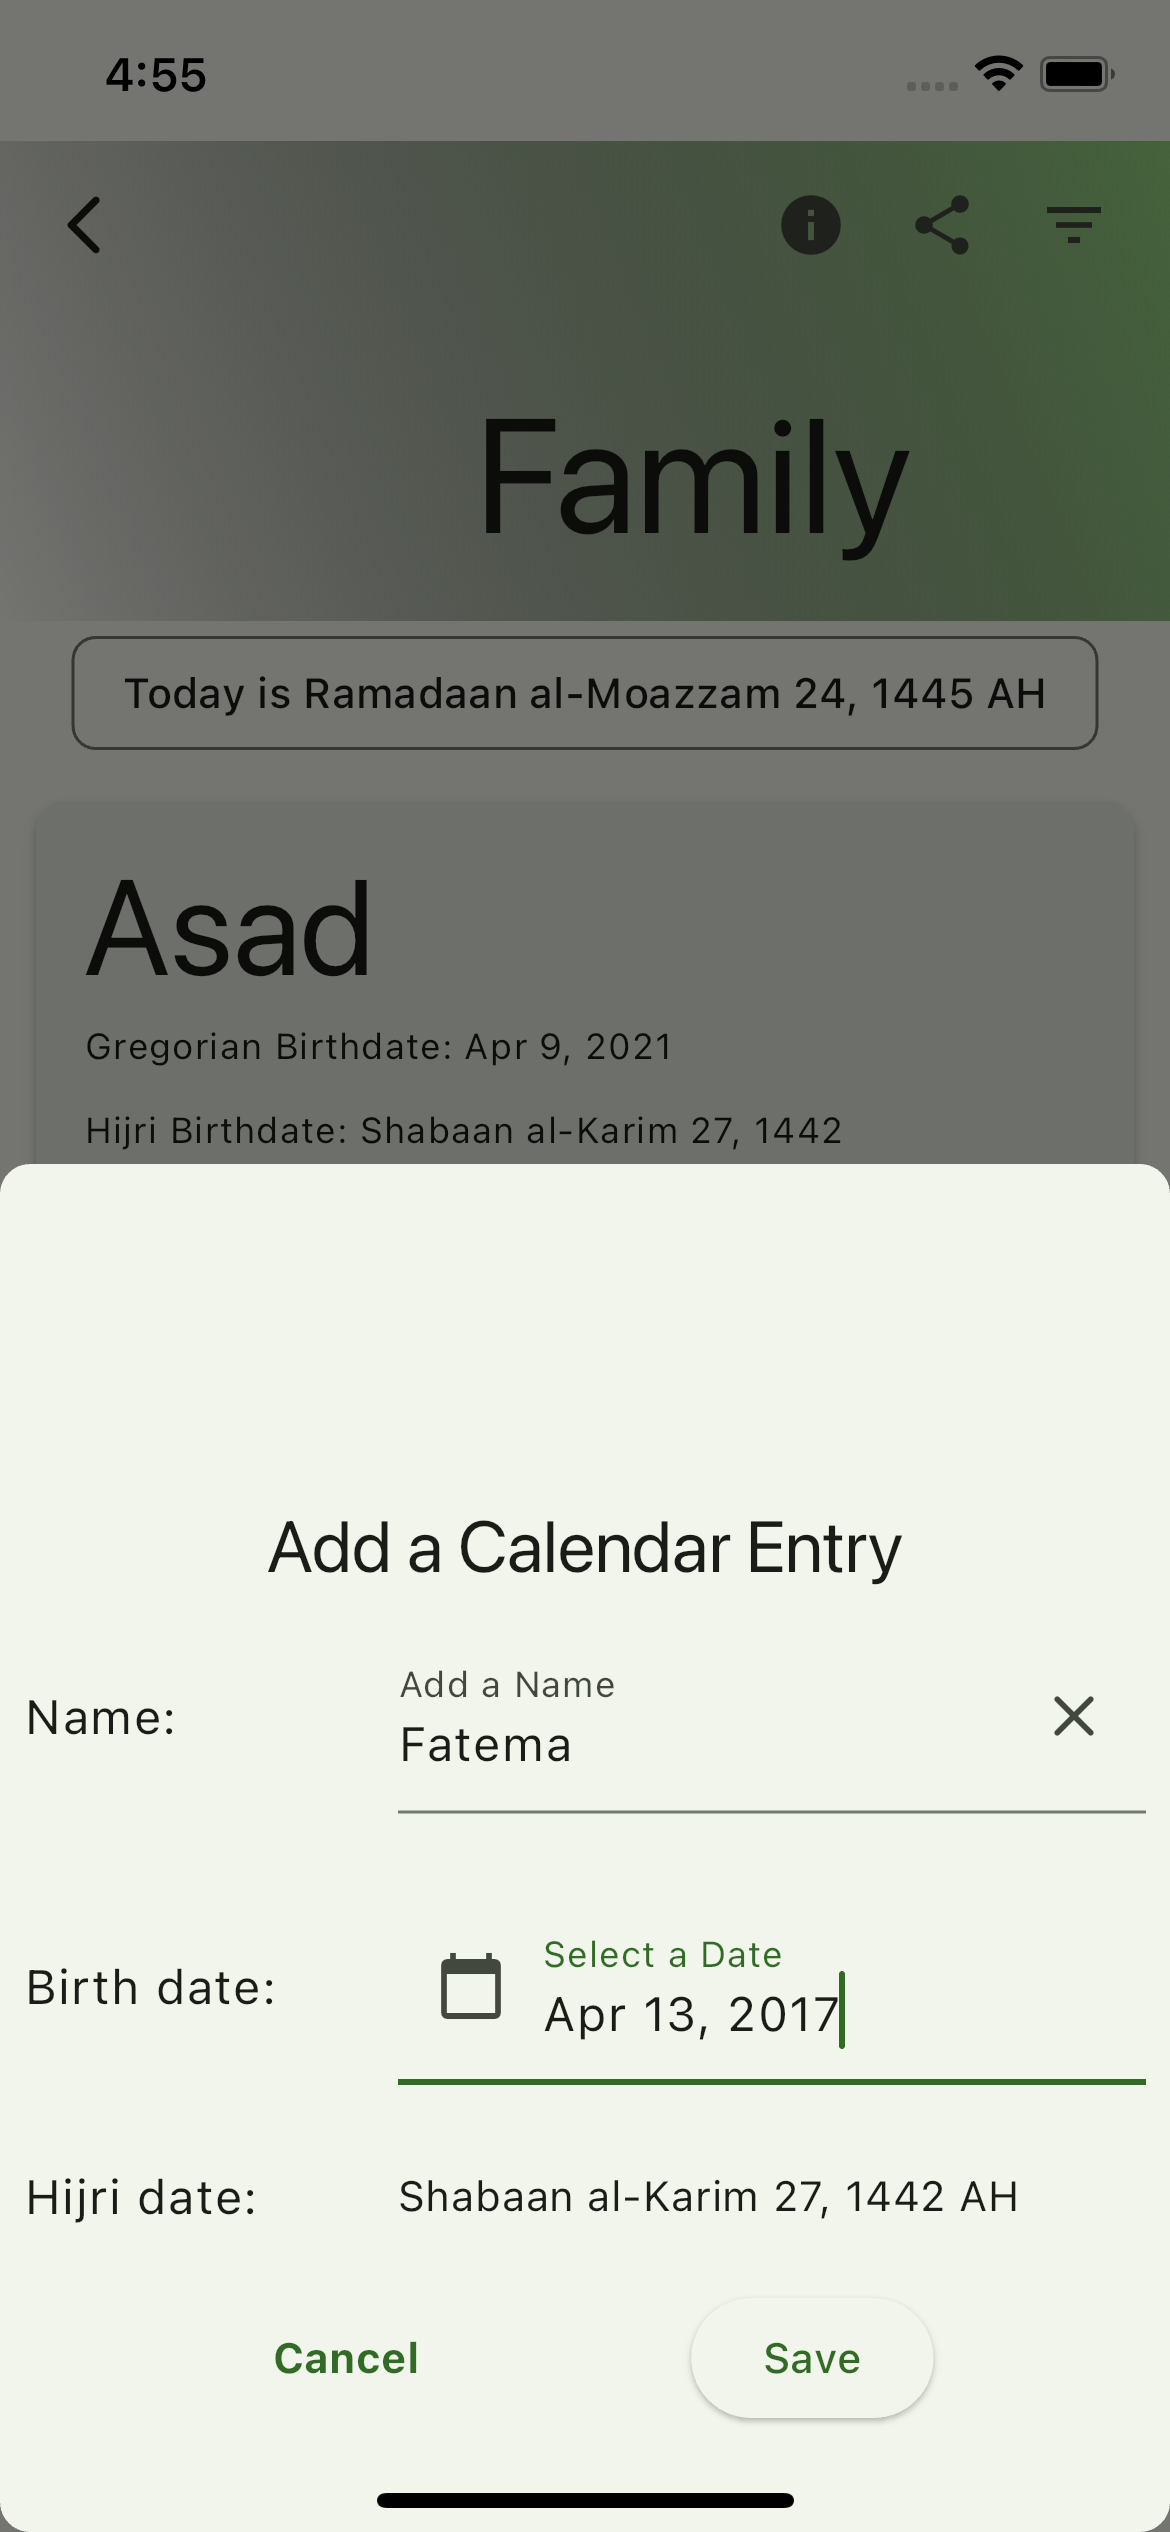 Hijri Calendar App - Create A Calendar Entry